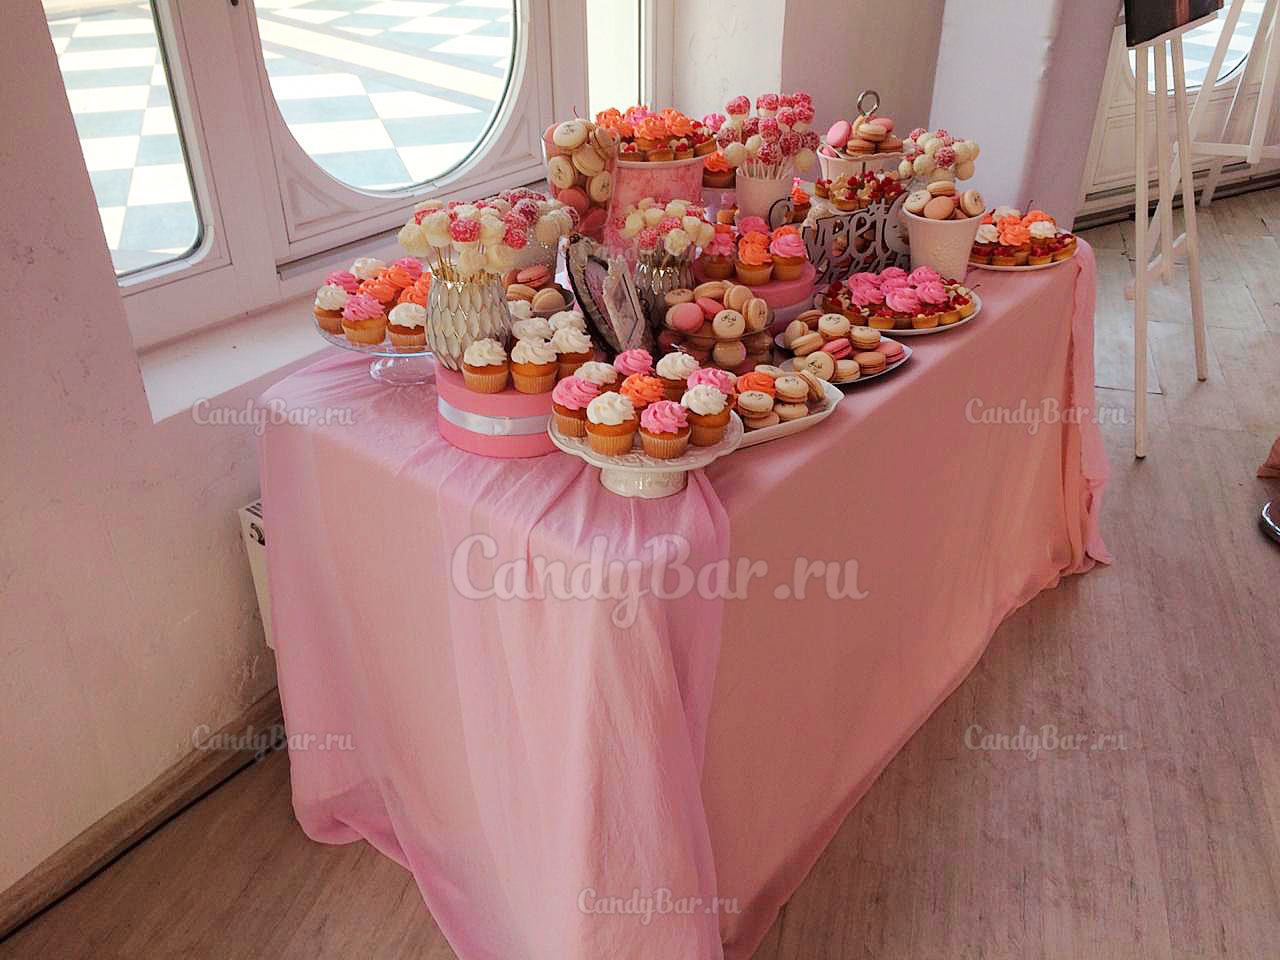 Свадебный кэнди бар в розовом цвете